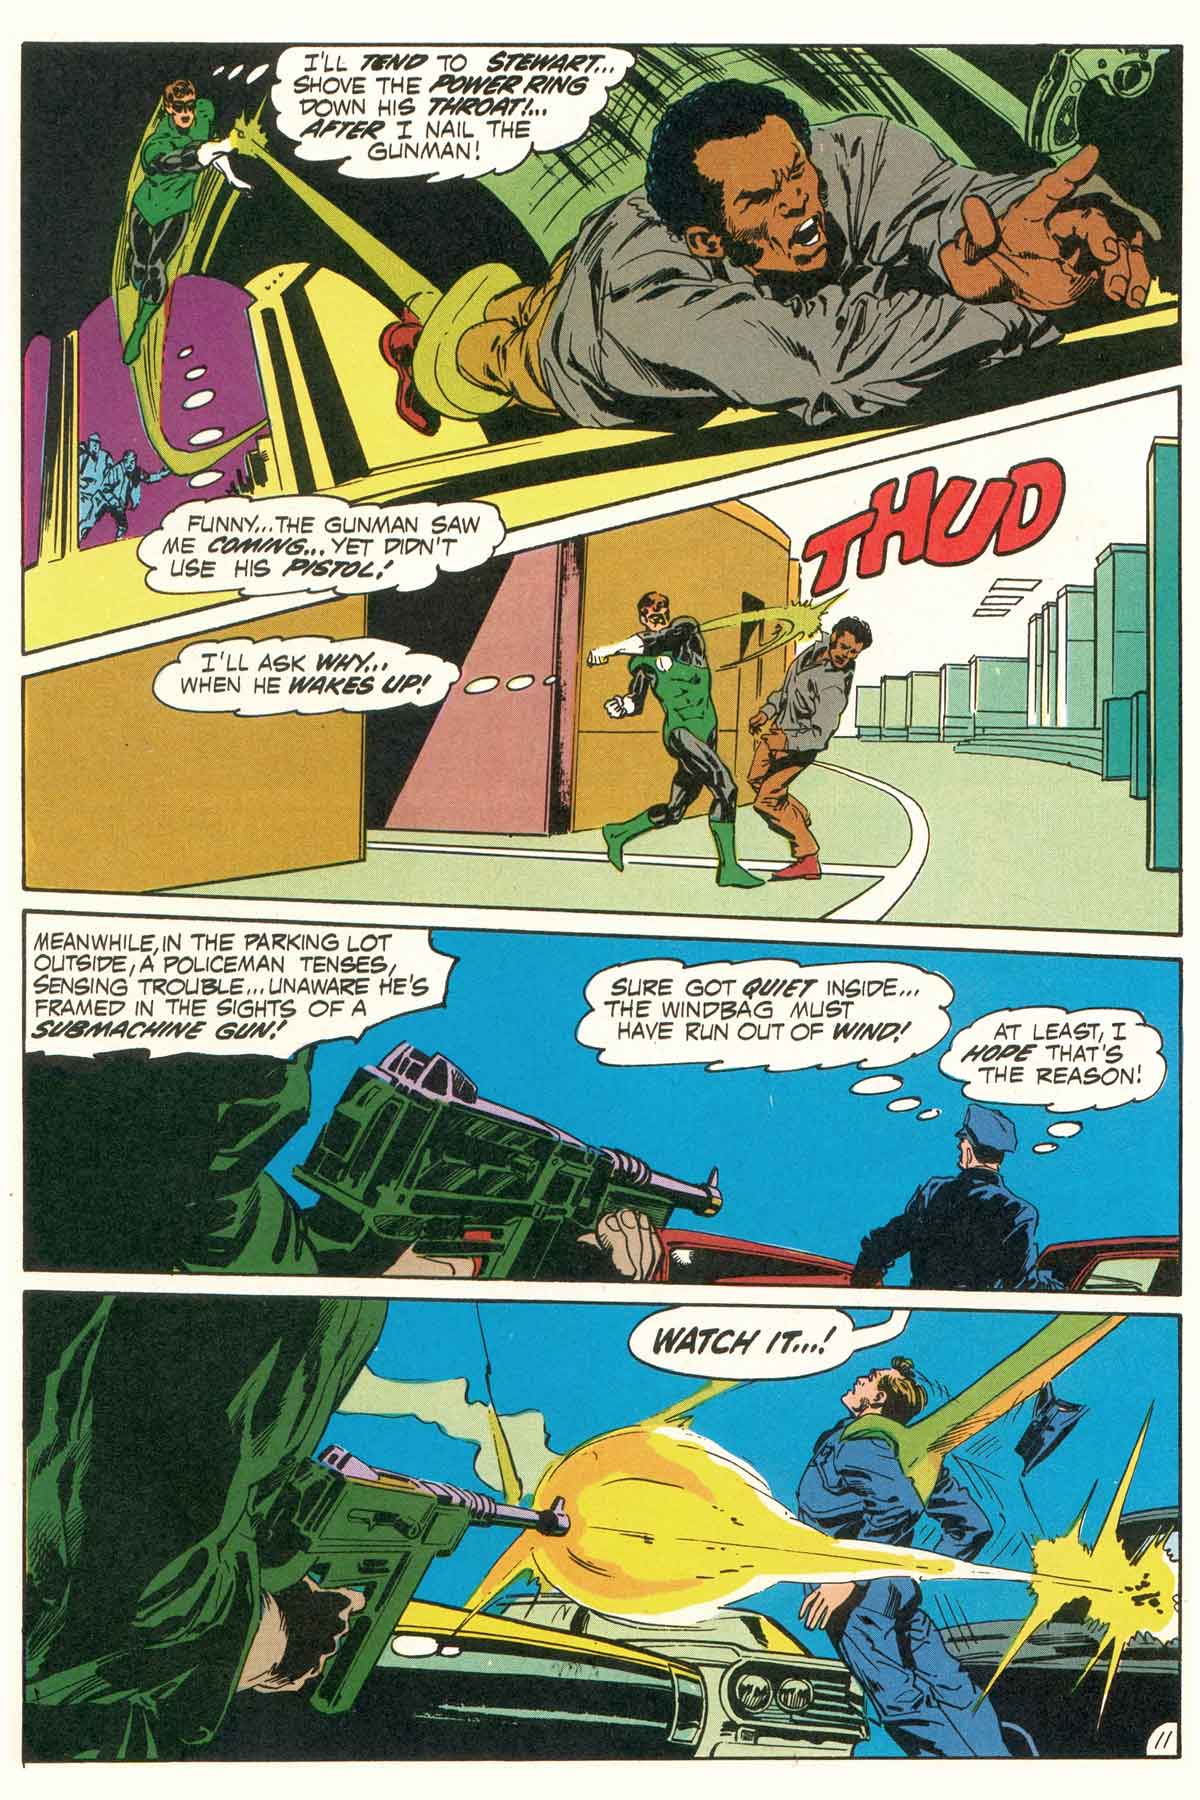 Read online Green Lantern/Green Arrow comic -  Issue #6 - 37